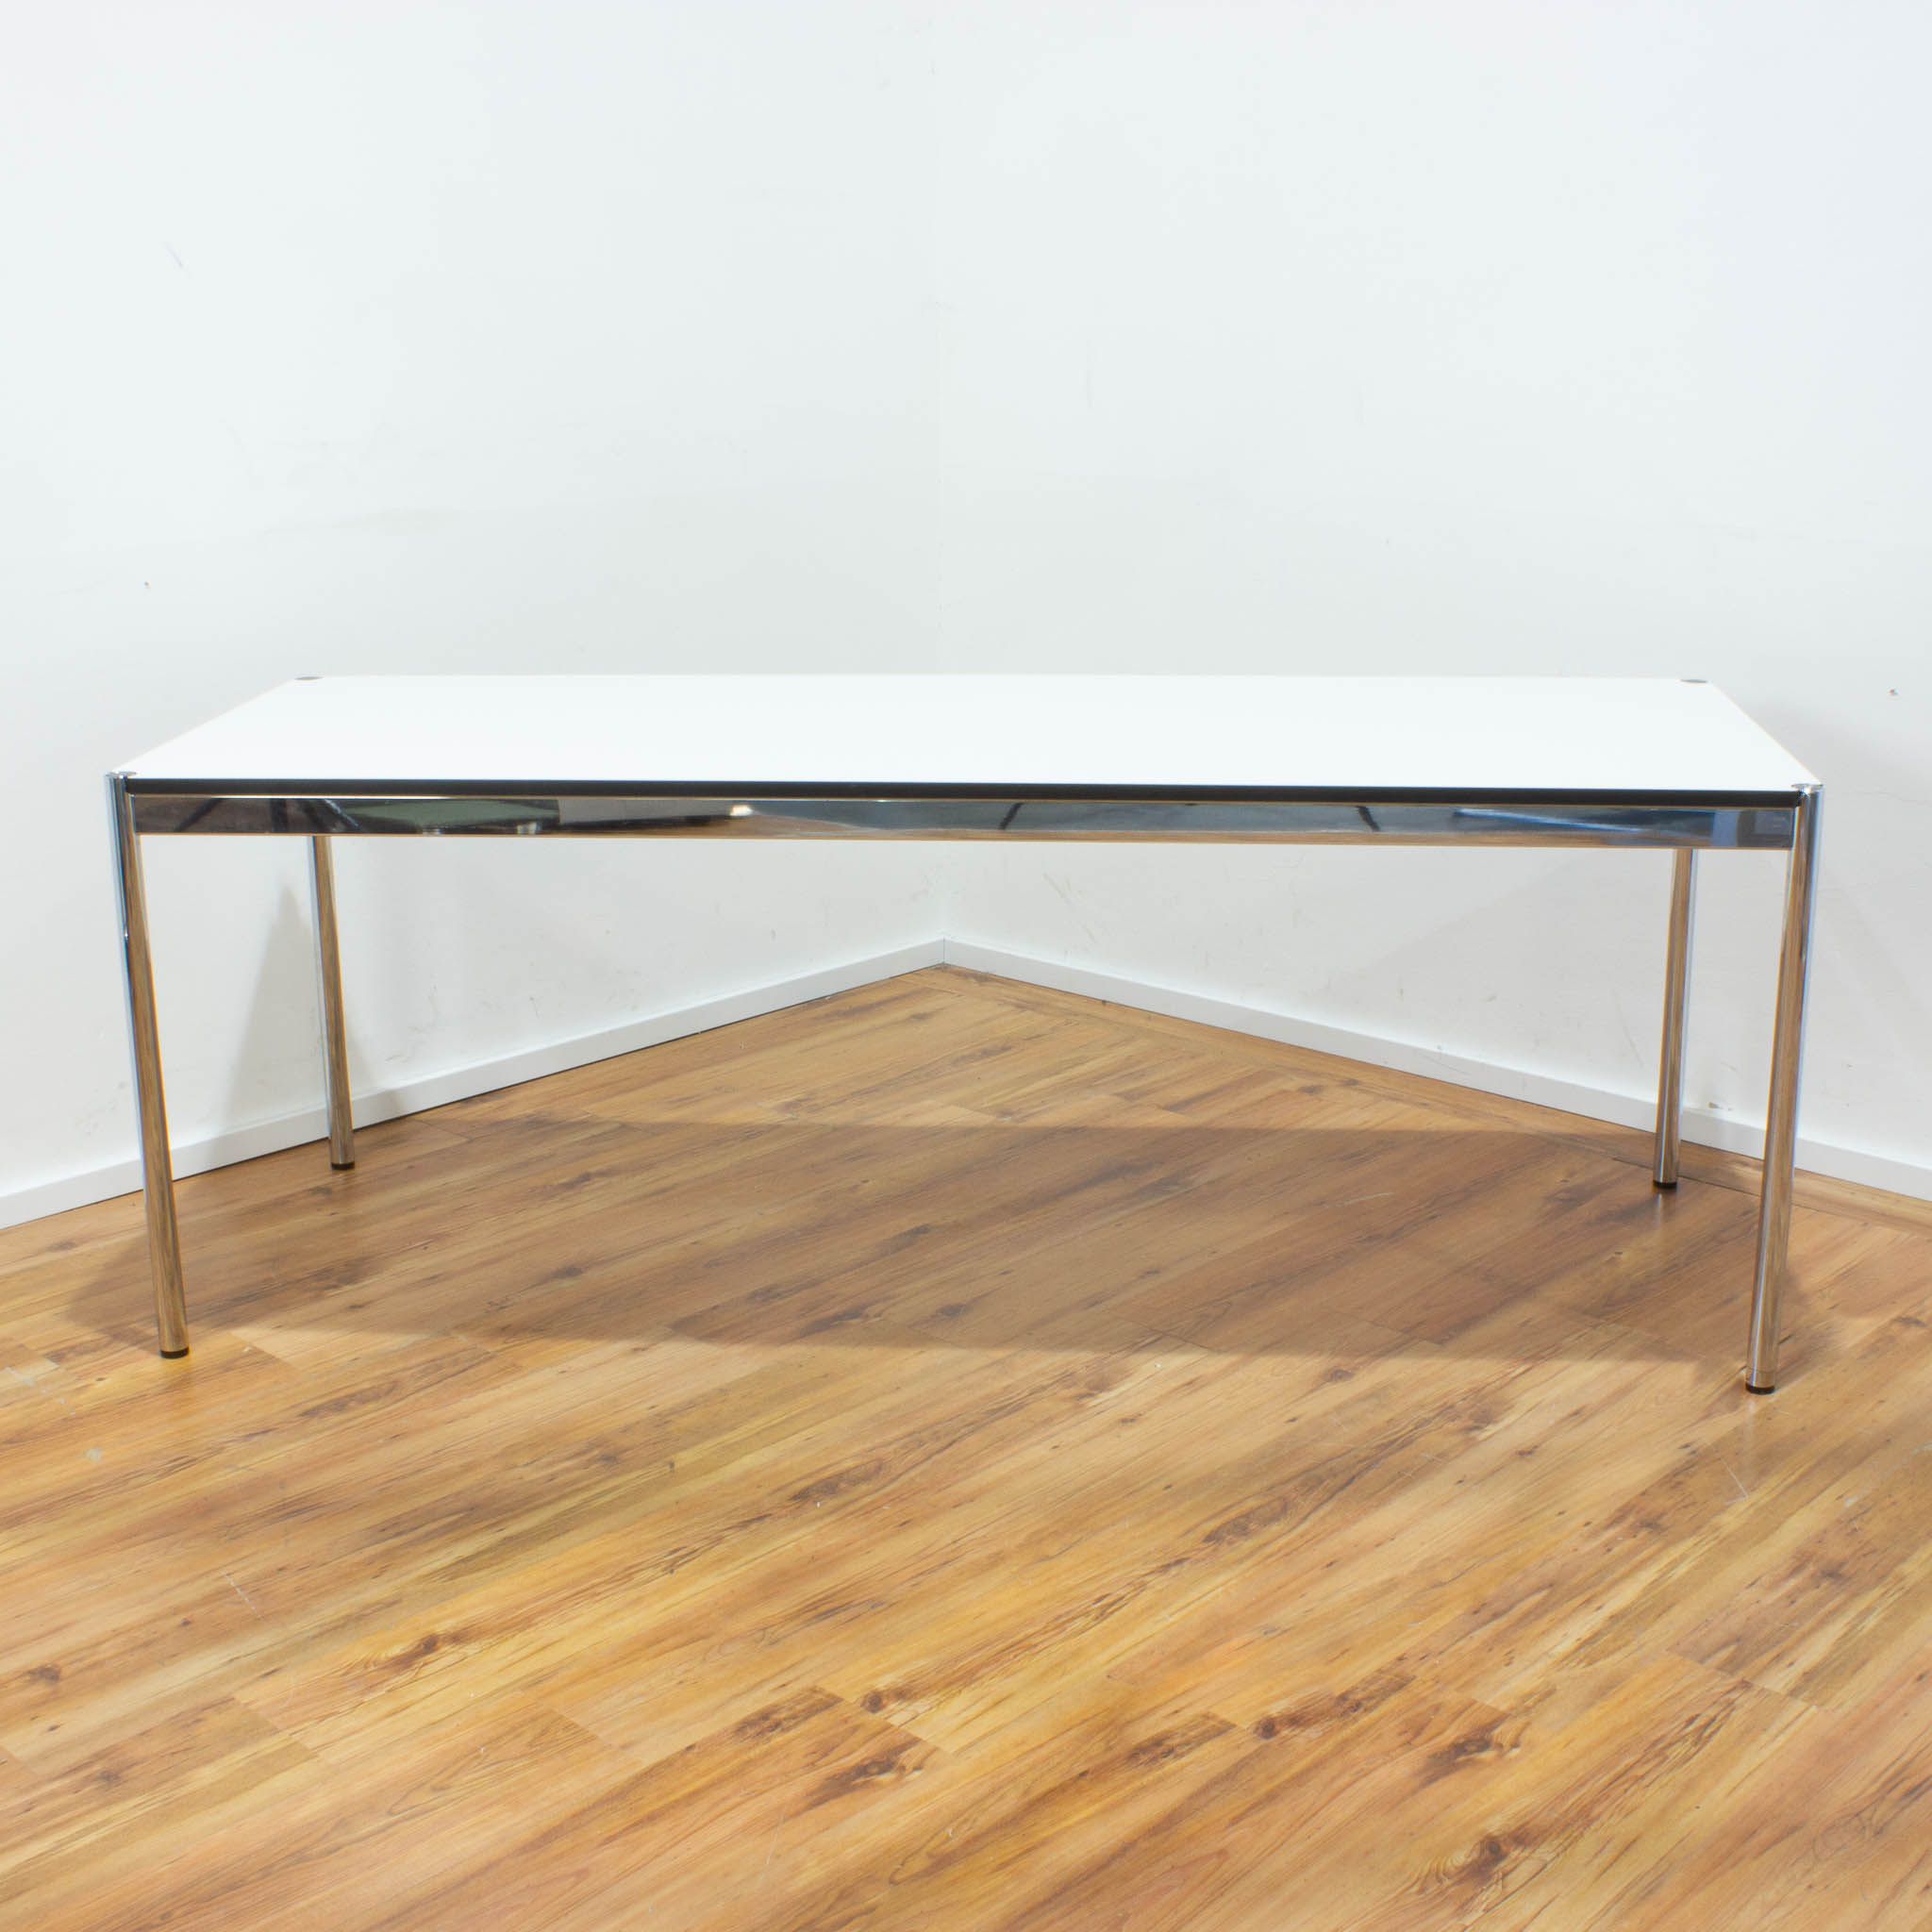 USM Haller Schreibtisch Plus 200 x 75 cm - Tischplatte weiß - Gestell 4-Fuß chrom